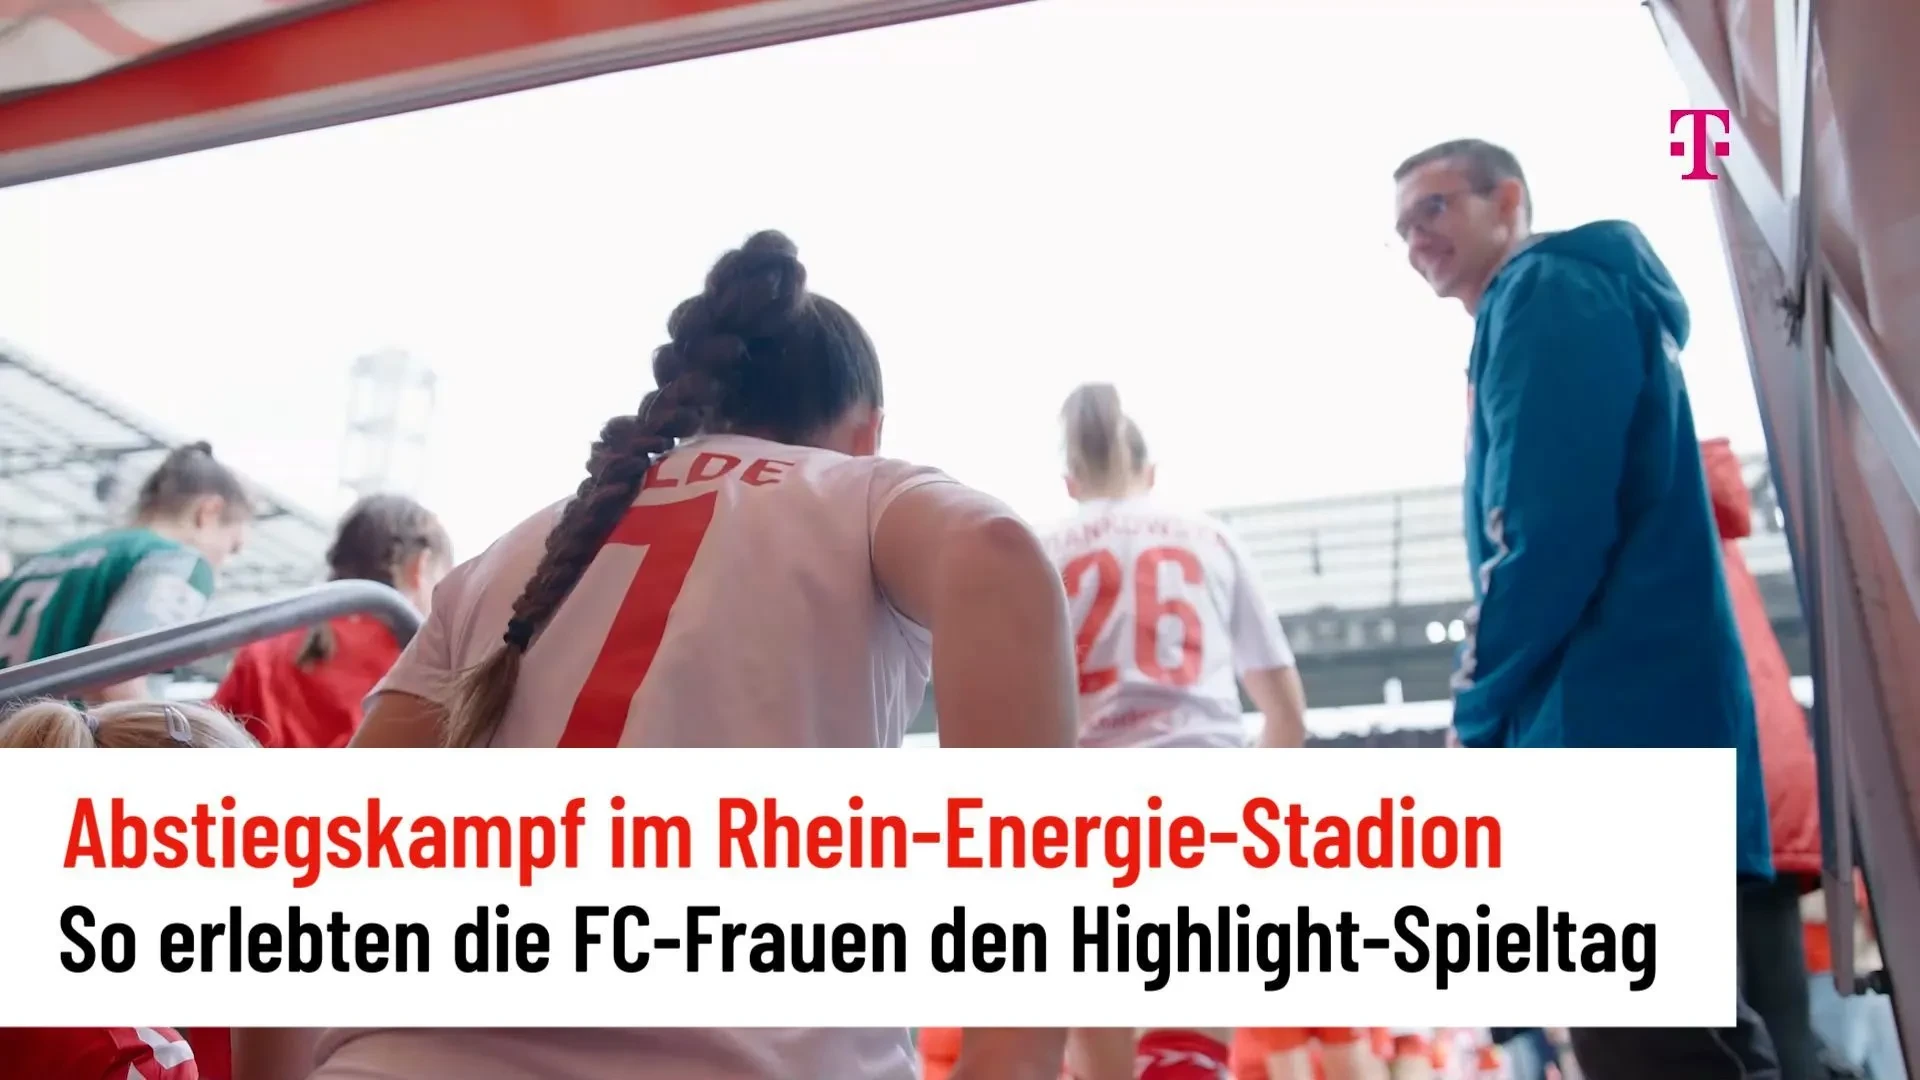 Como as mulheres do FC viveram a jornada no Rhein-Energie-Stadion